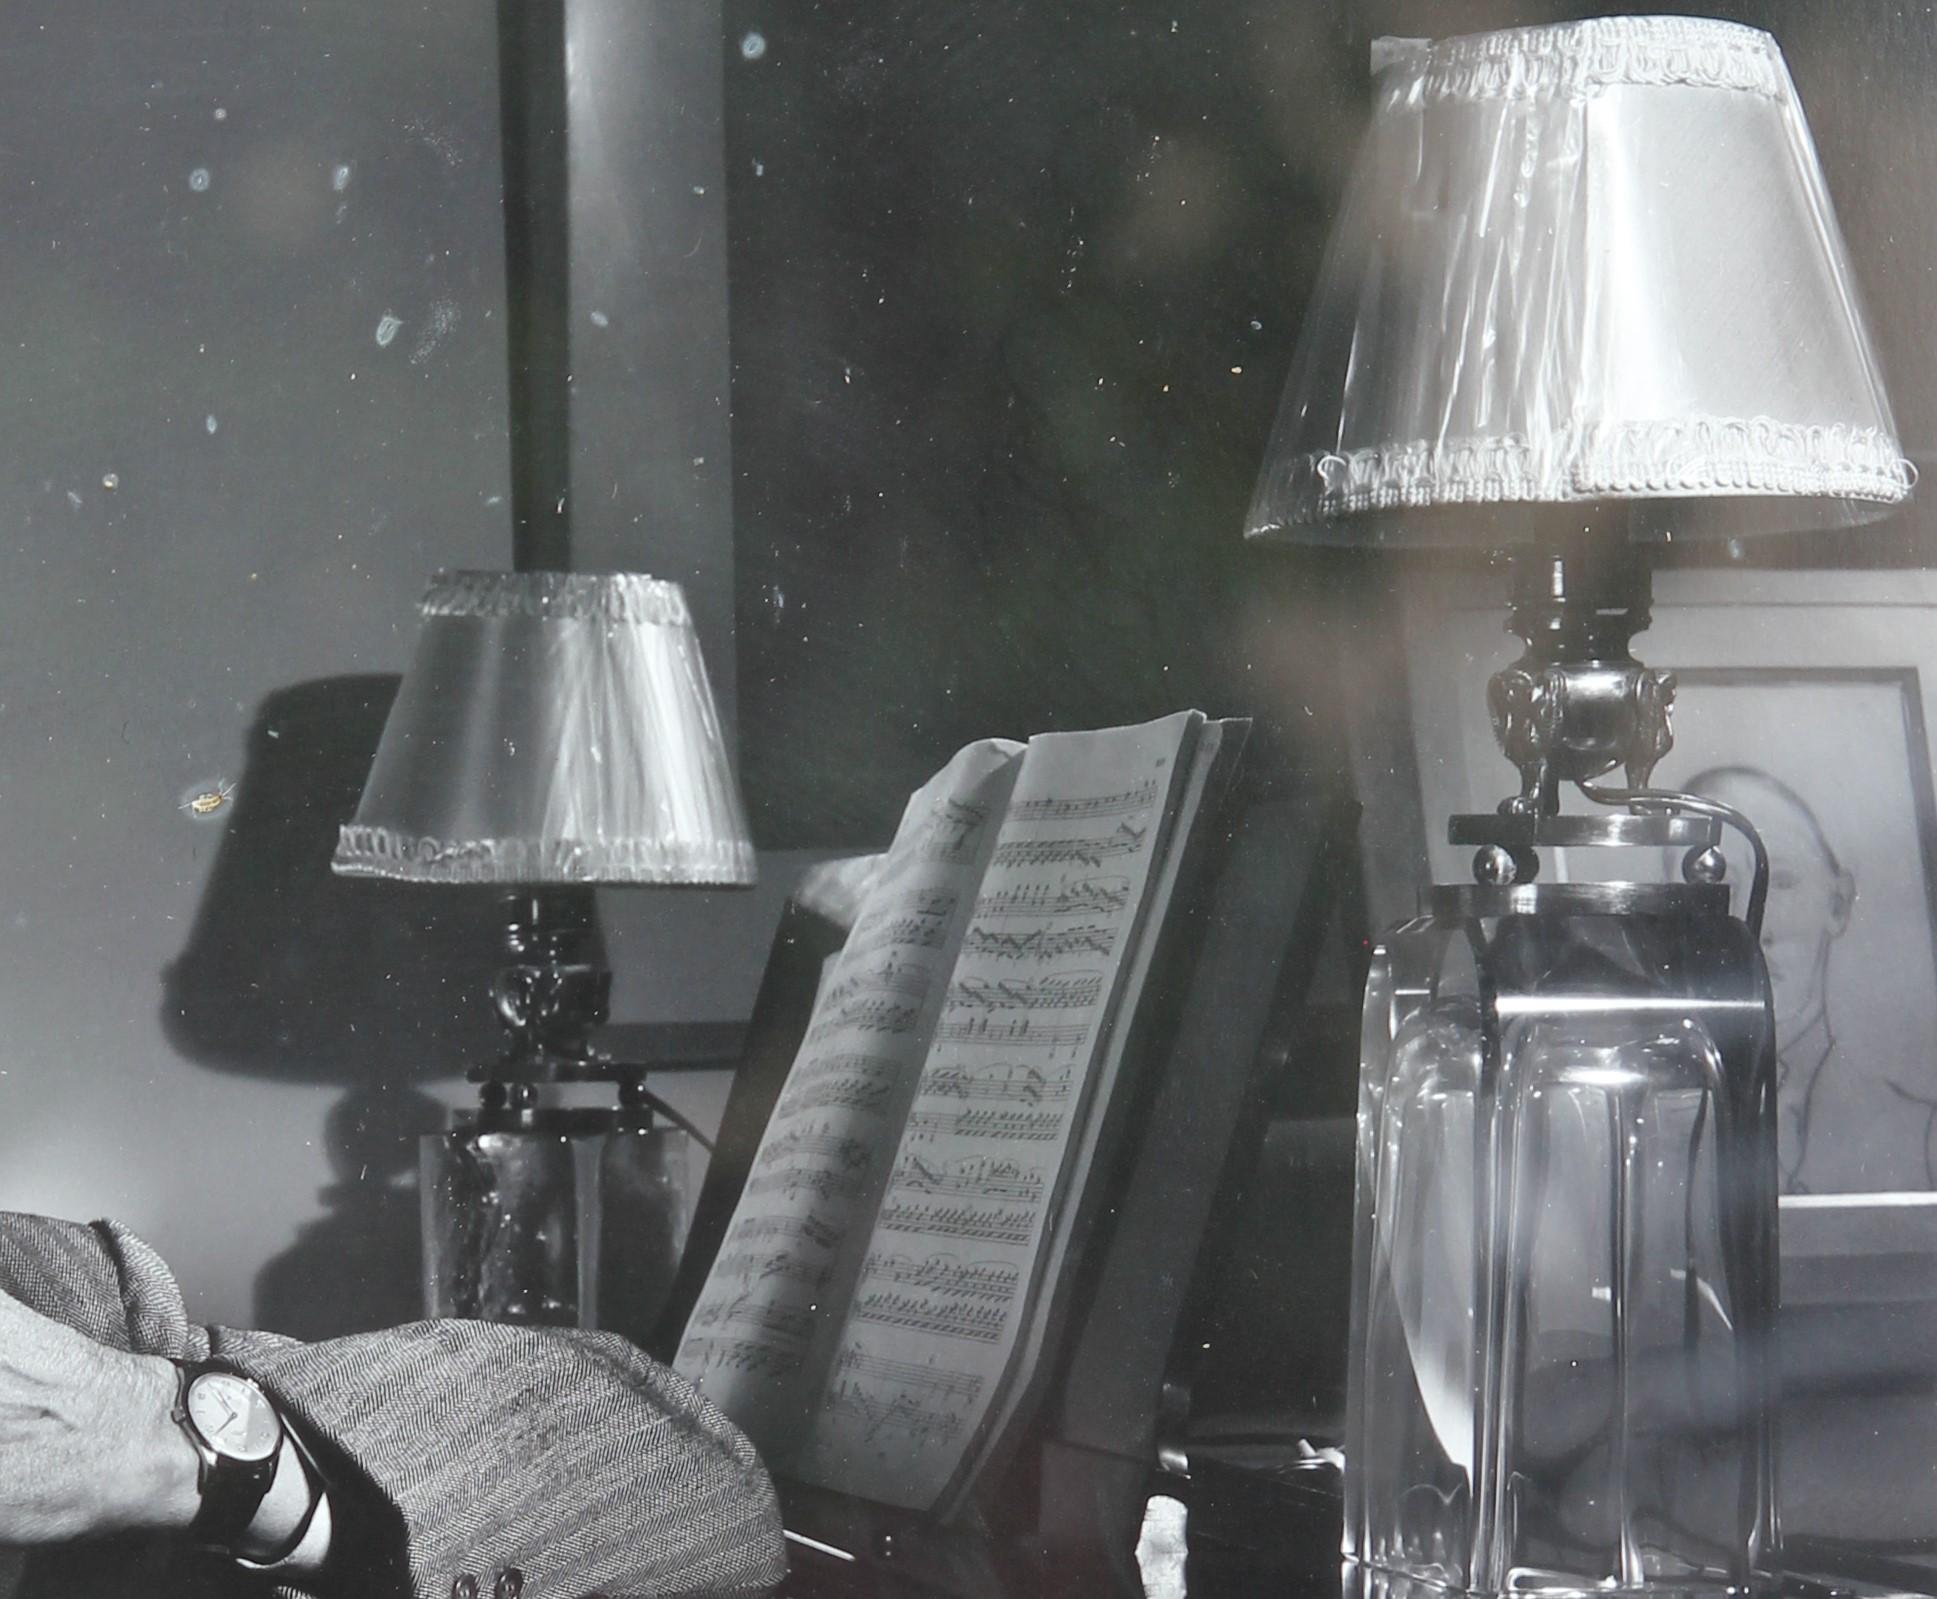 Portrait d'Igor Stravinsky en noir et blanc, réalisé à la gélatine argentique par le célèbre photographe du XXe siècle Yousuf Karsh. Mat et encadré dans un cadre en acier argenté.

Dimensions sans cadre : H 19.75 in. x L 15.75 in. 

Biographie de